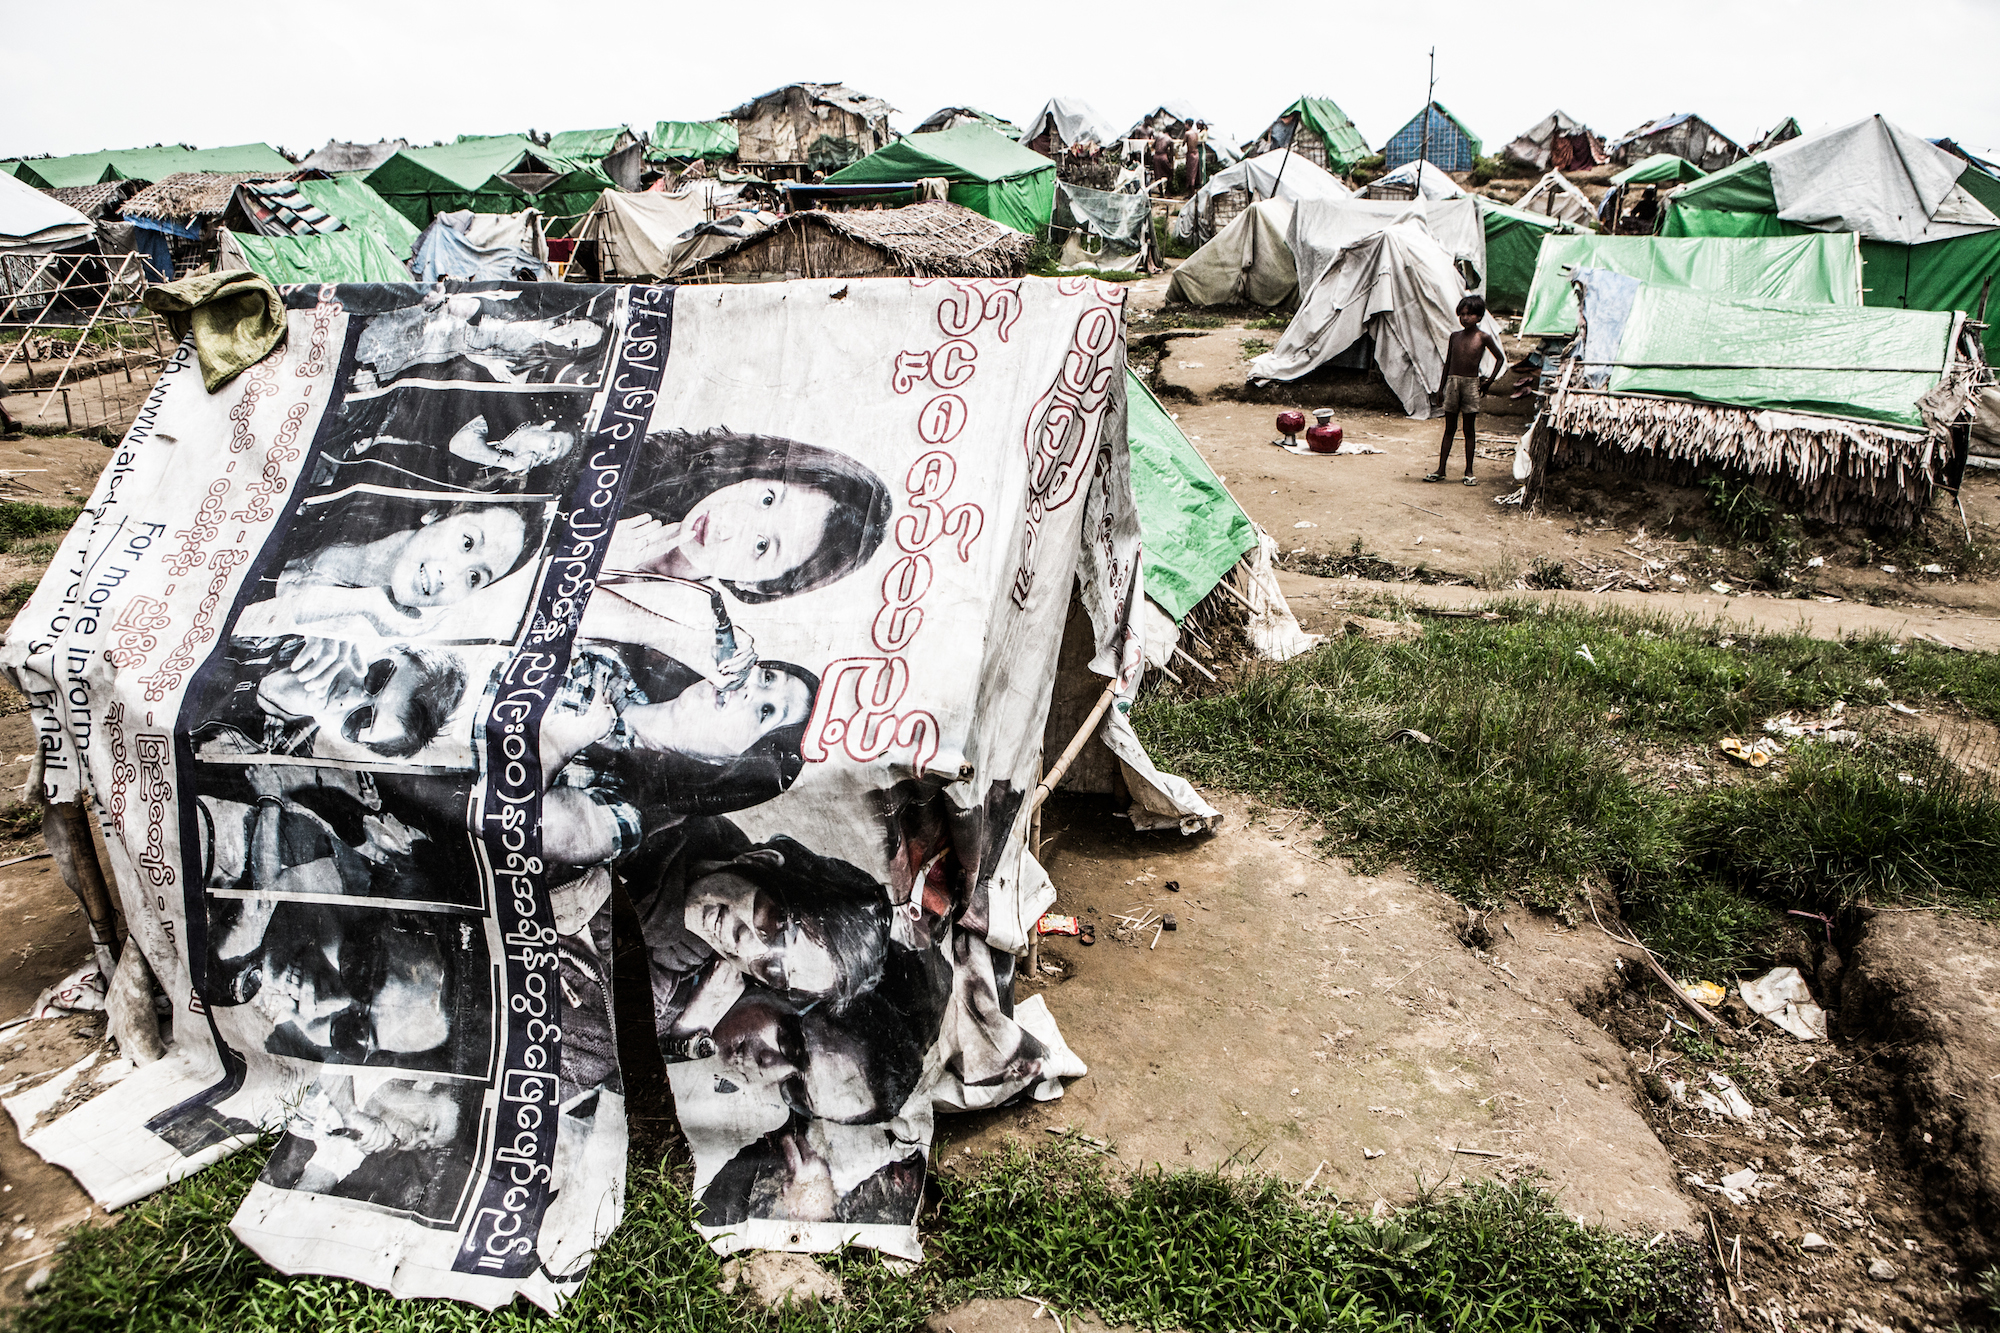 De situatie in de Rohingya-kampen rond Sittwe zijn "uiterst betreurenswaardig".